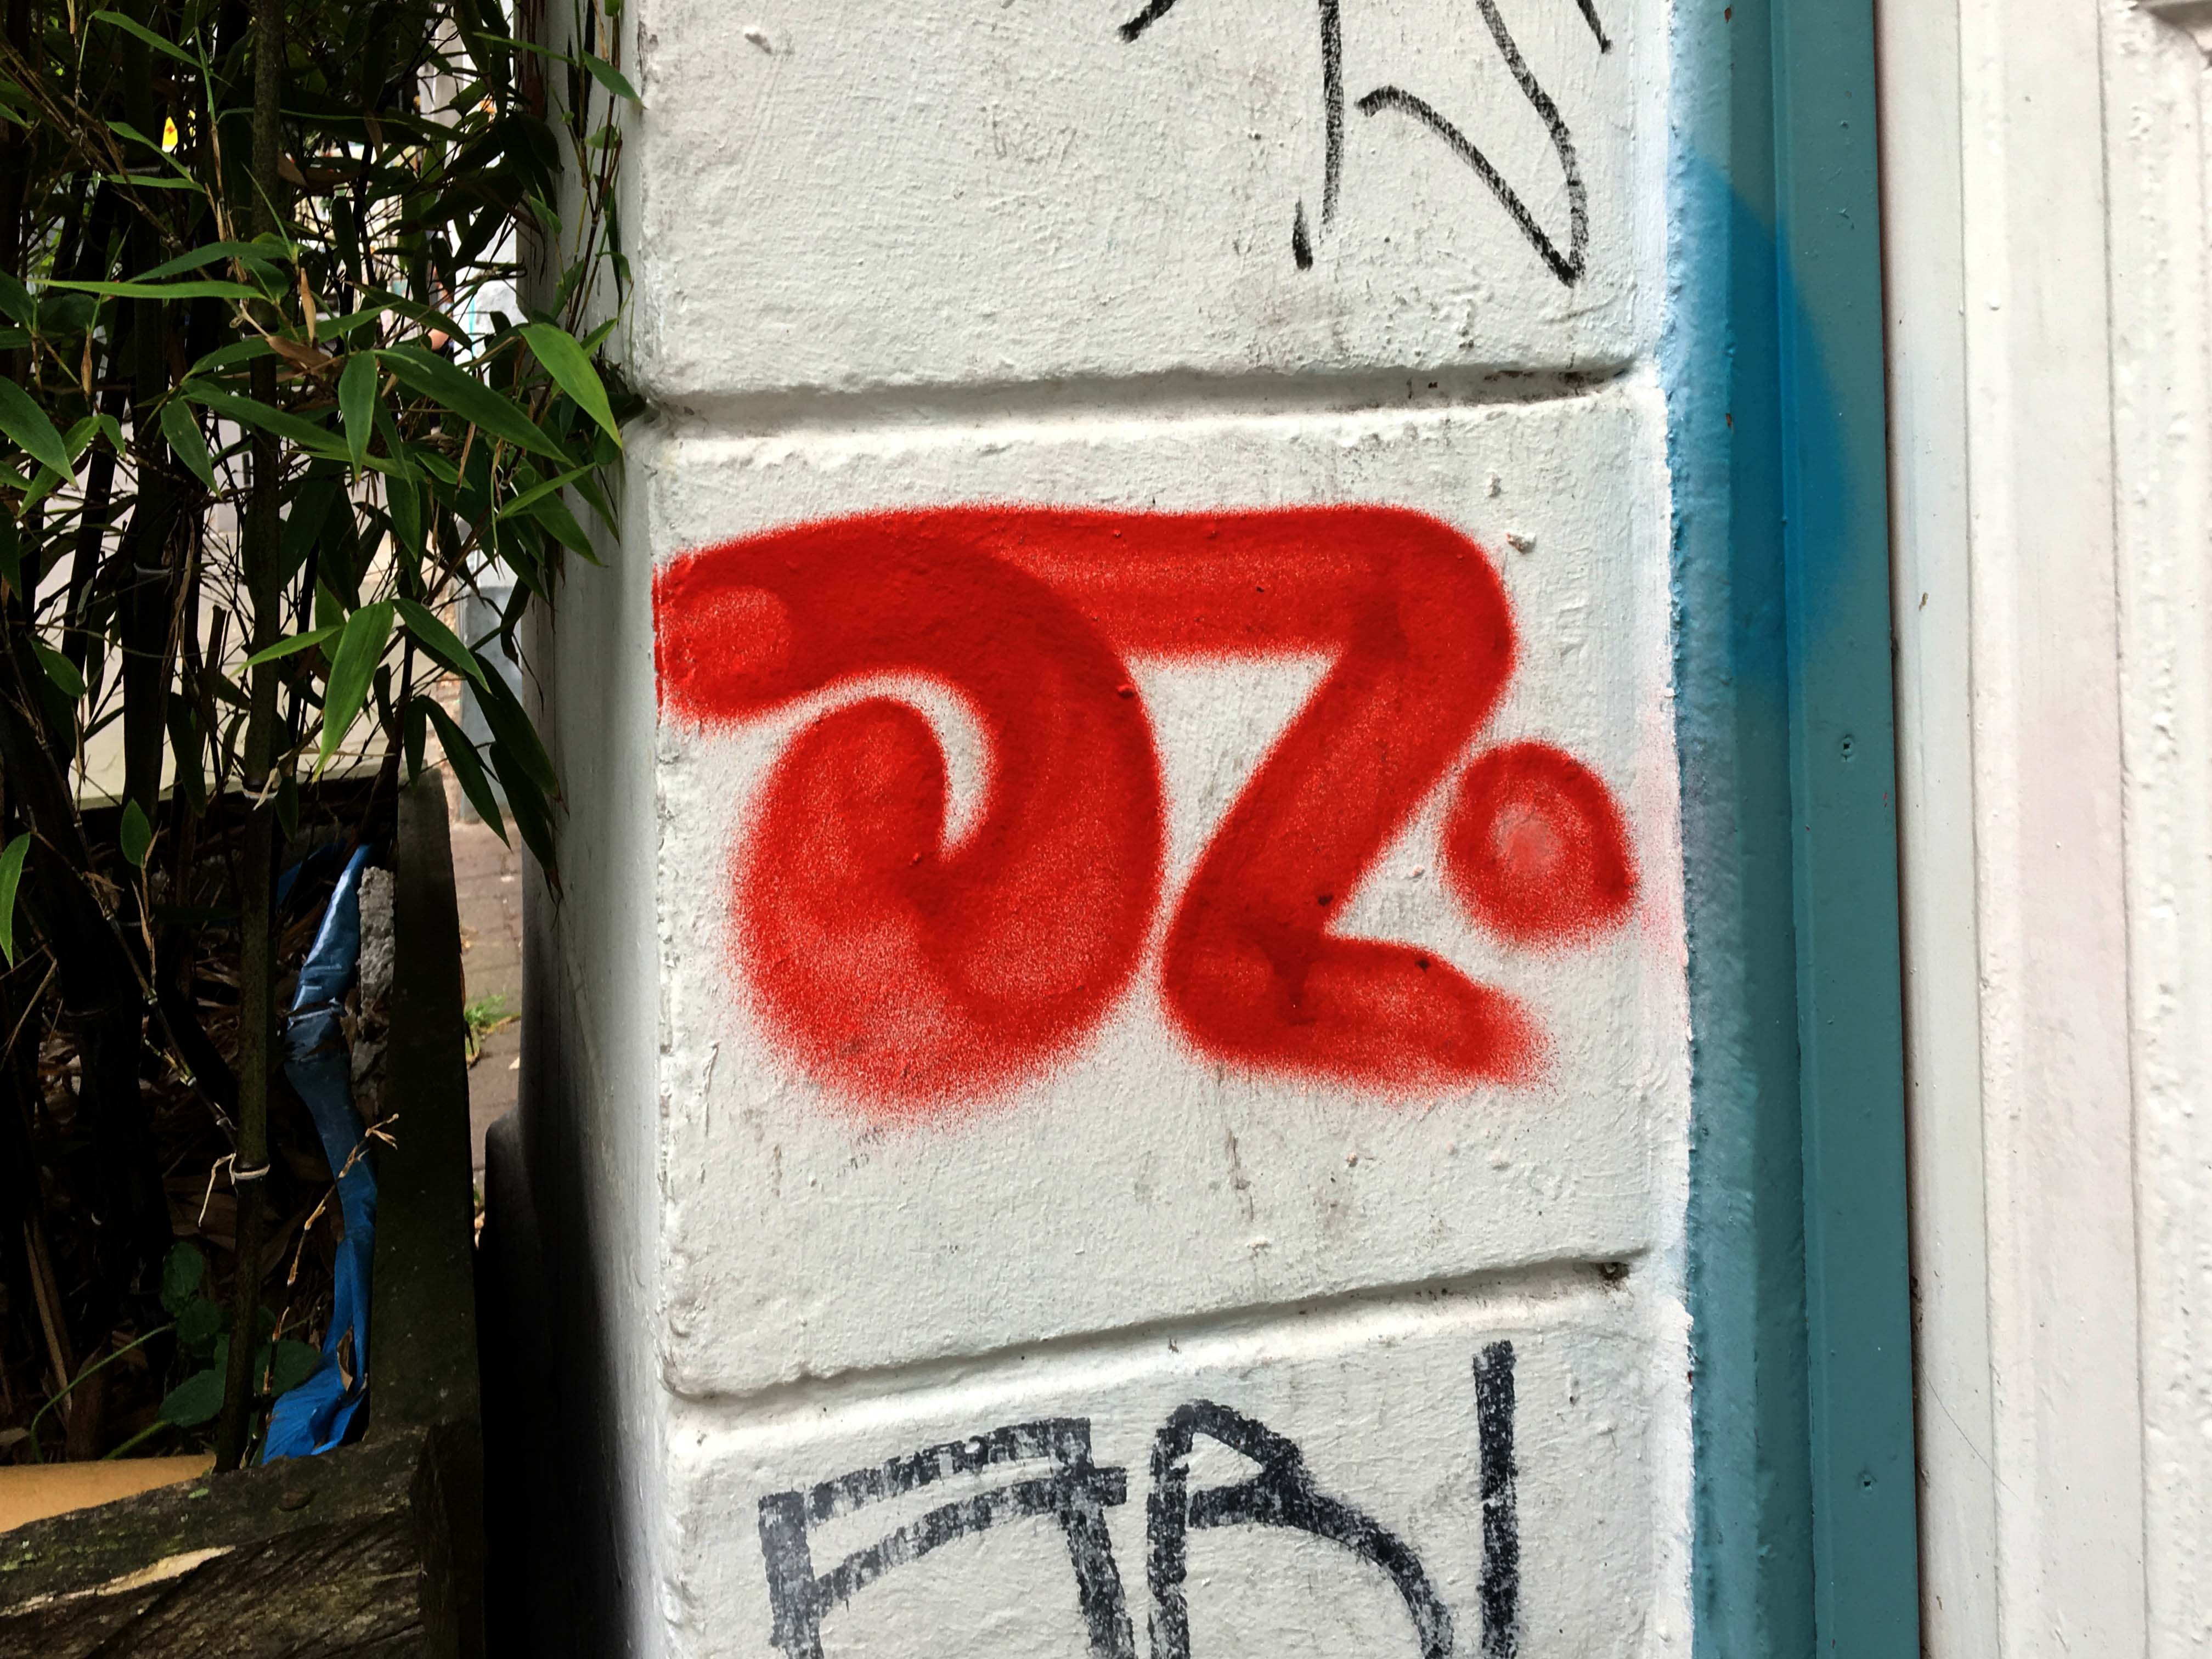 der Namenszug OZ wurde in Rot auf einen Hauseingang gesprüht